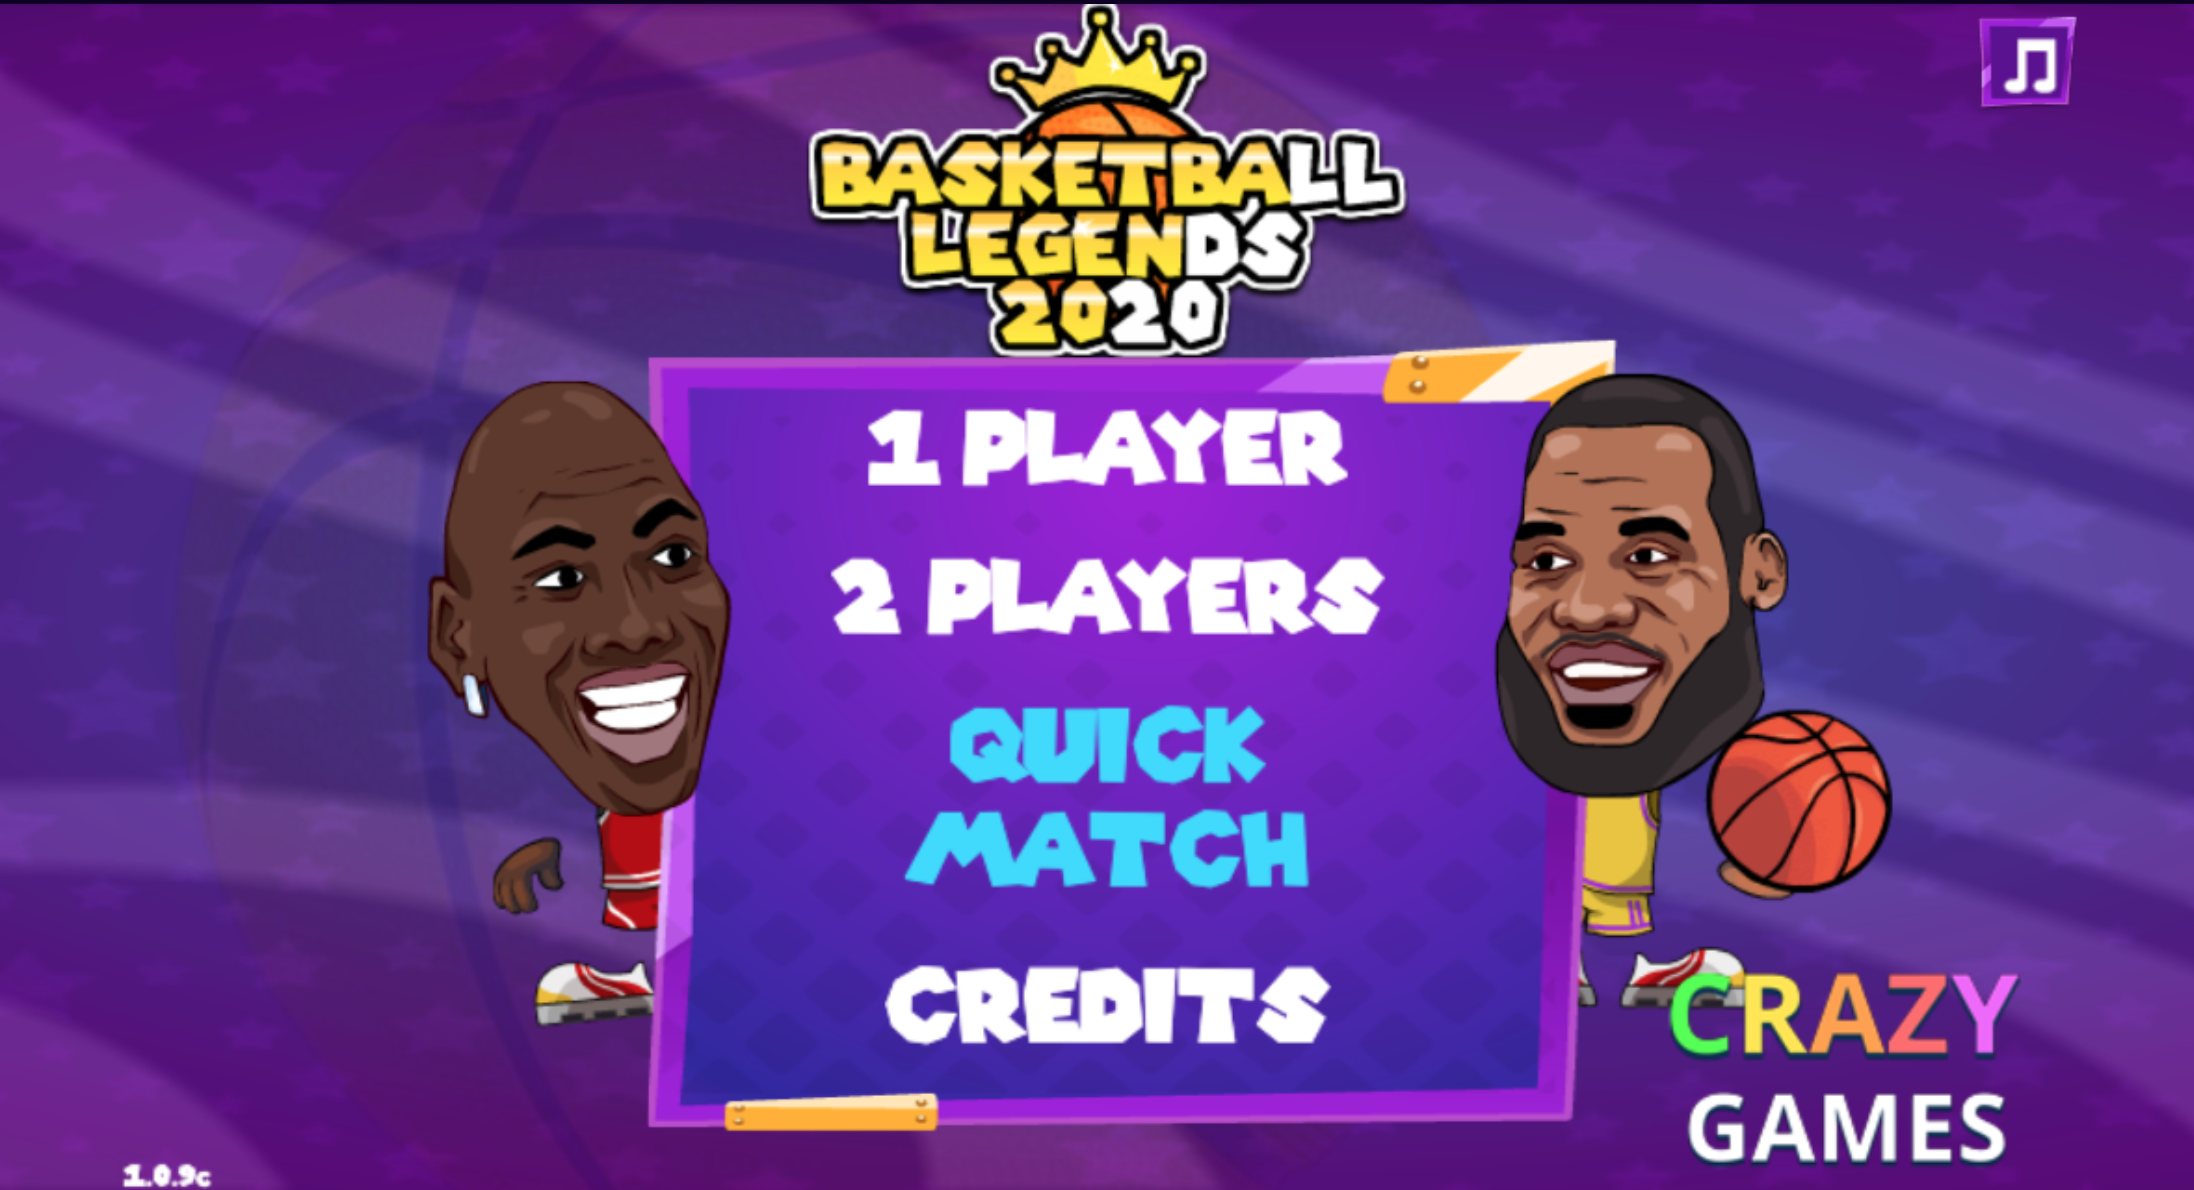 Basketball Legends 2020 screenshots image